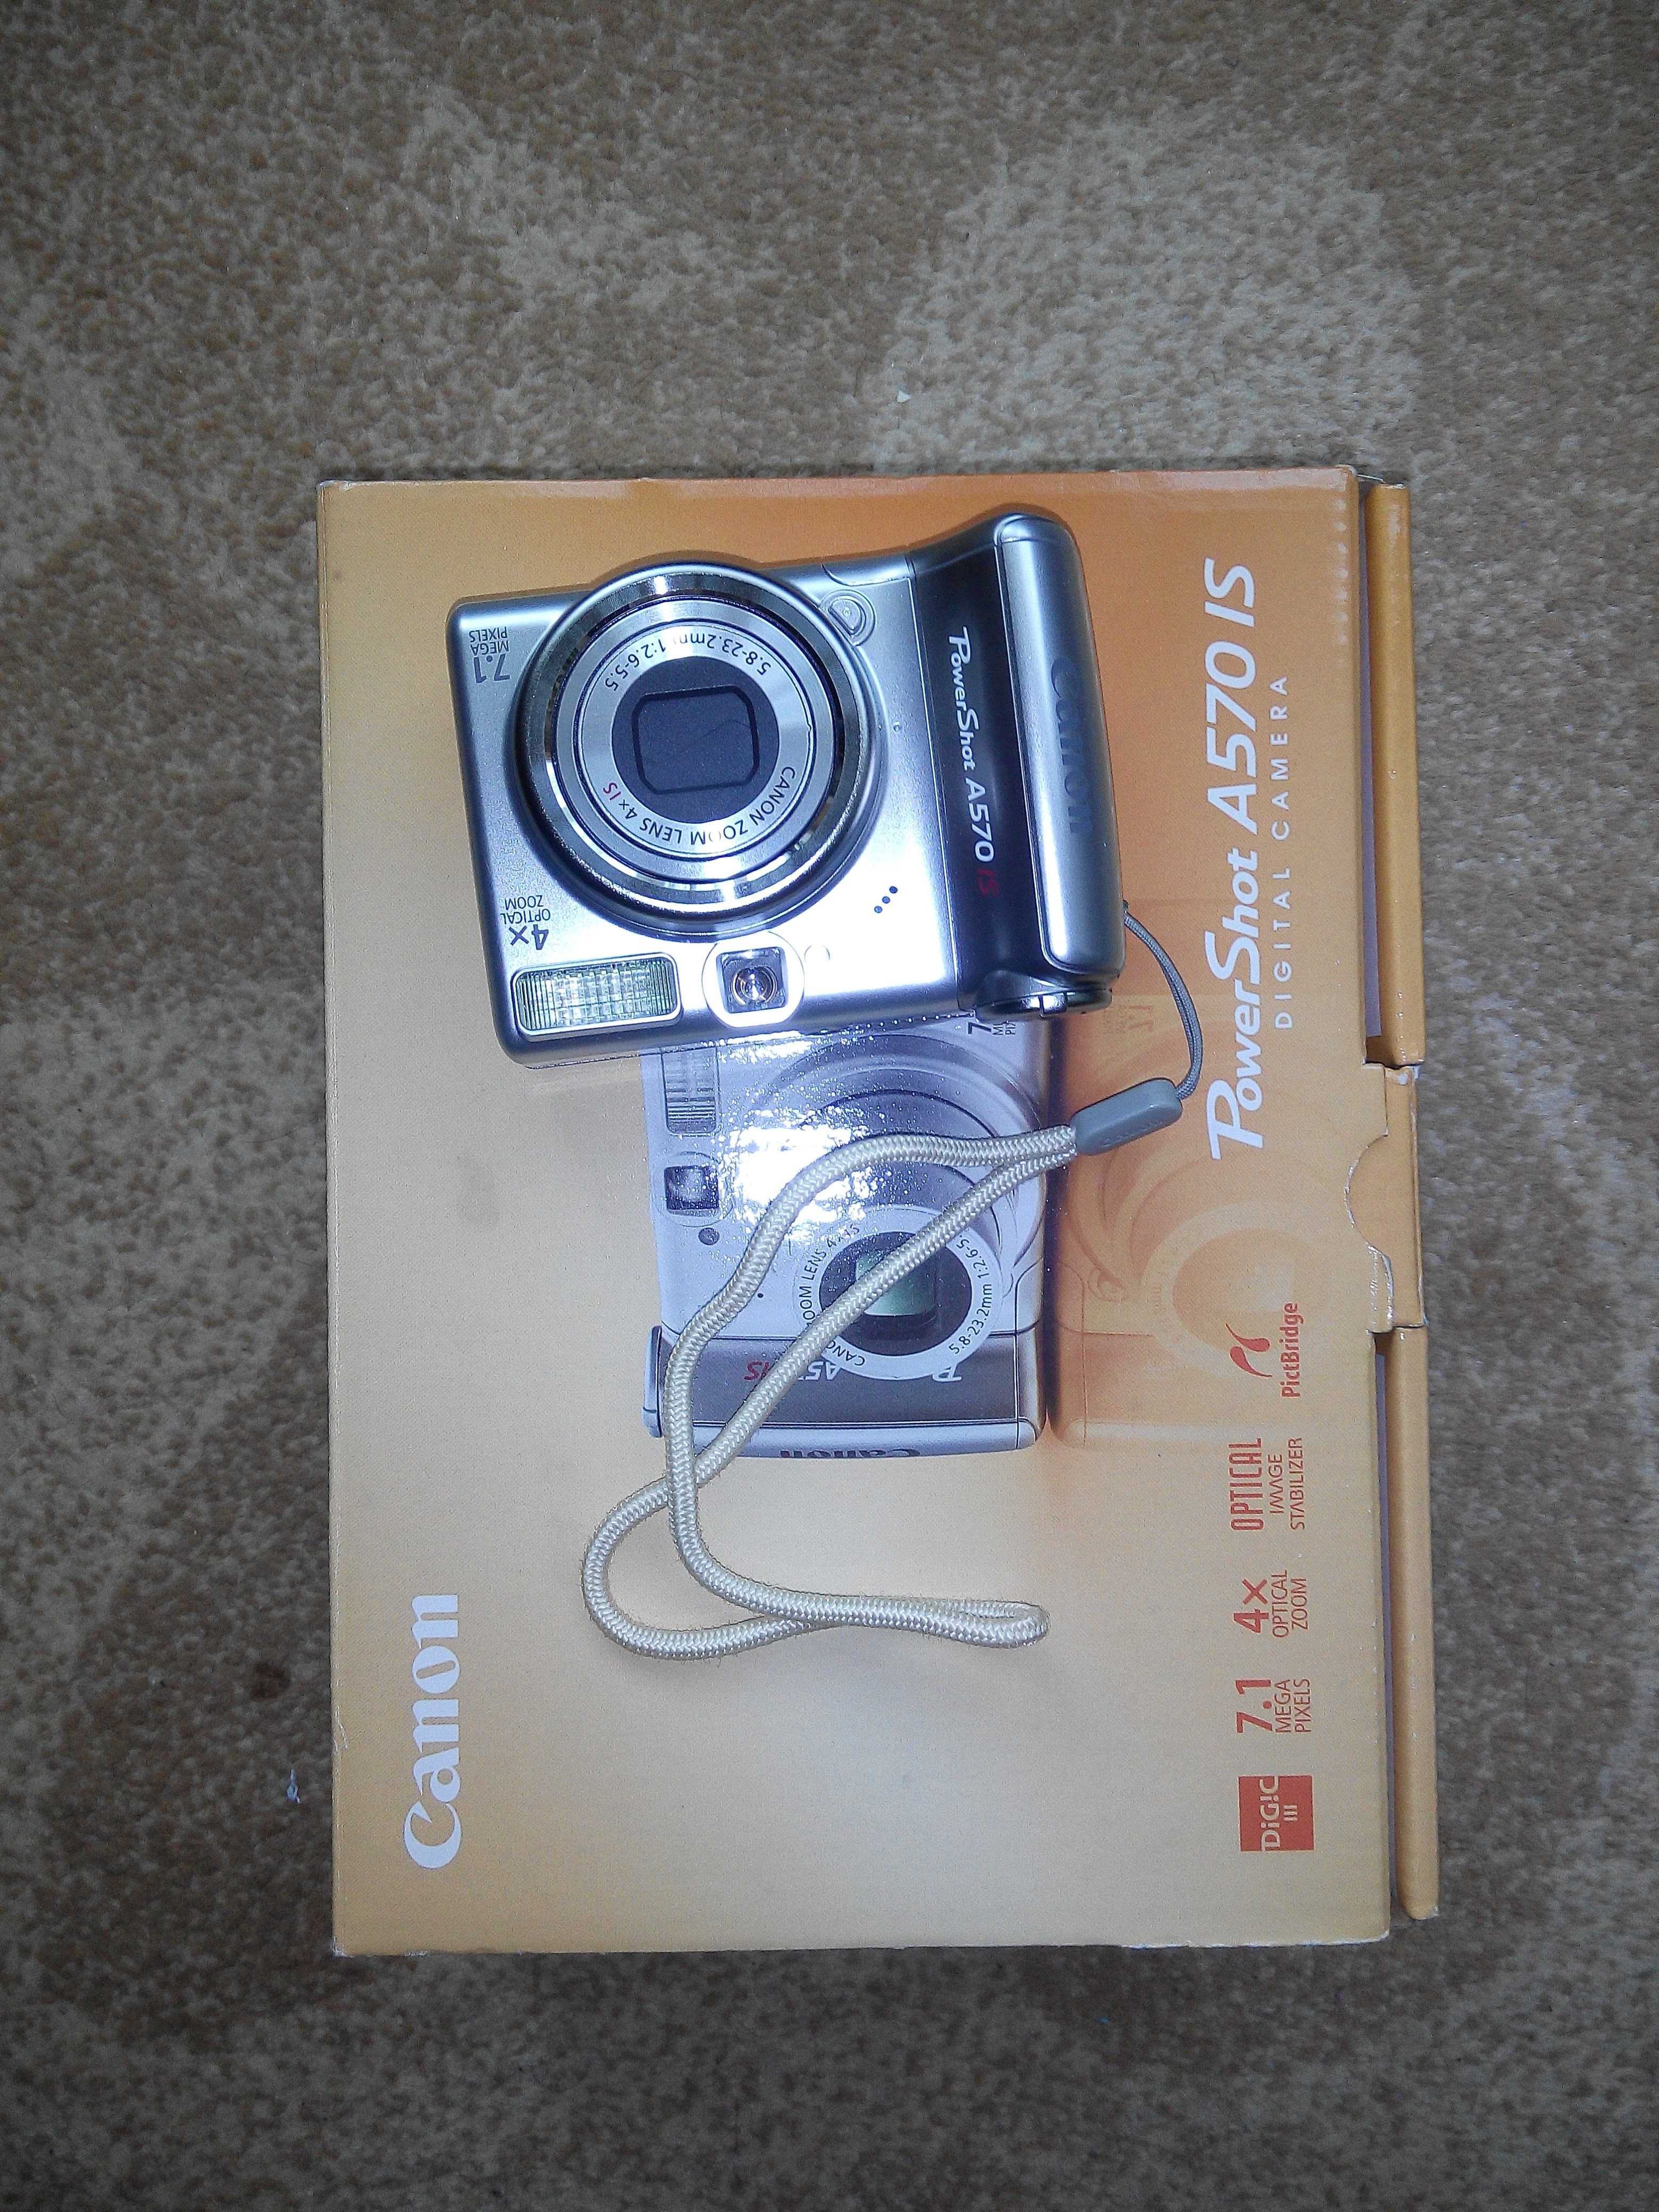 Фотоаппарат Canon PowerShot A570 IS рабочий